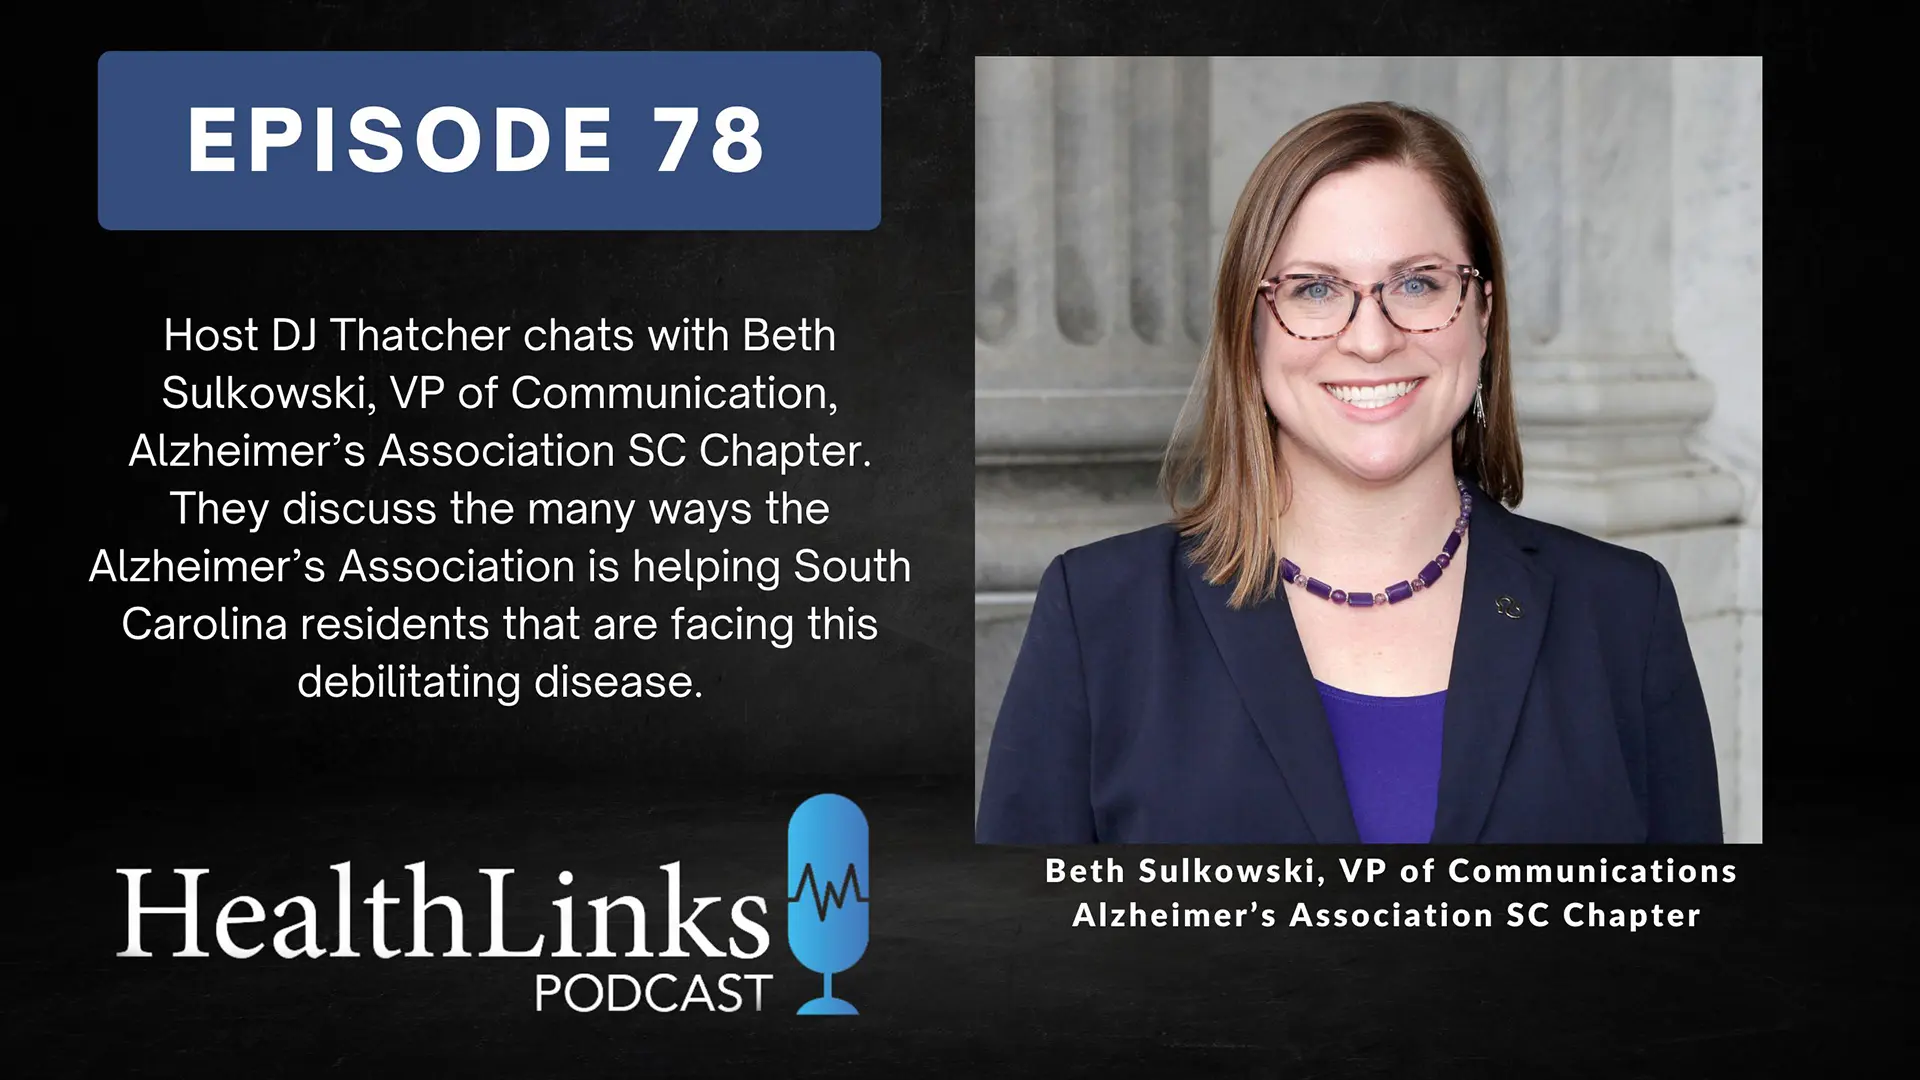 Thumbnail for HealthLinks Podcast